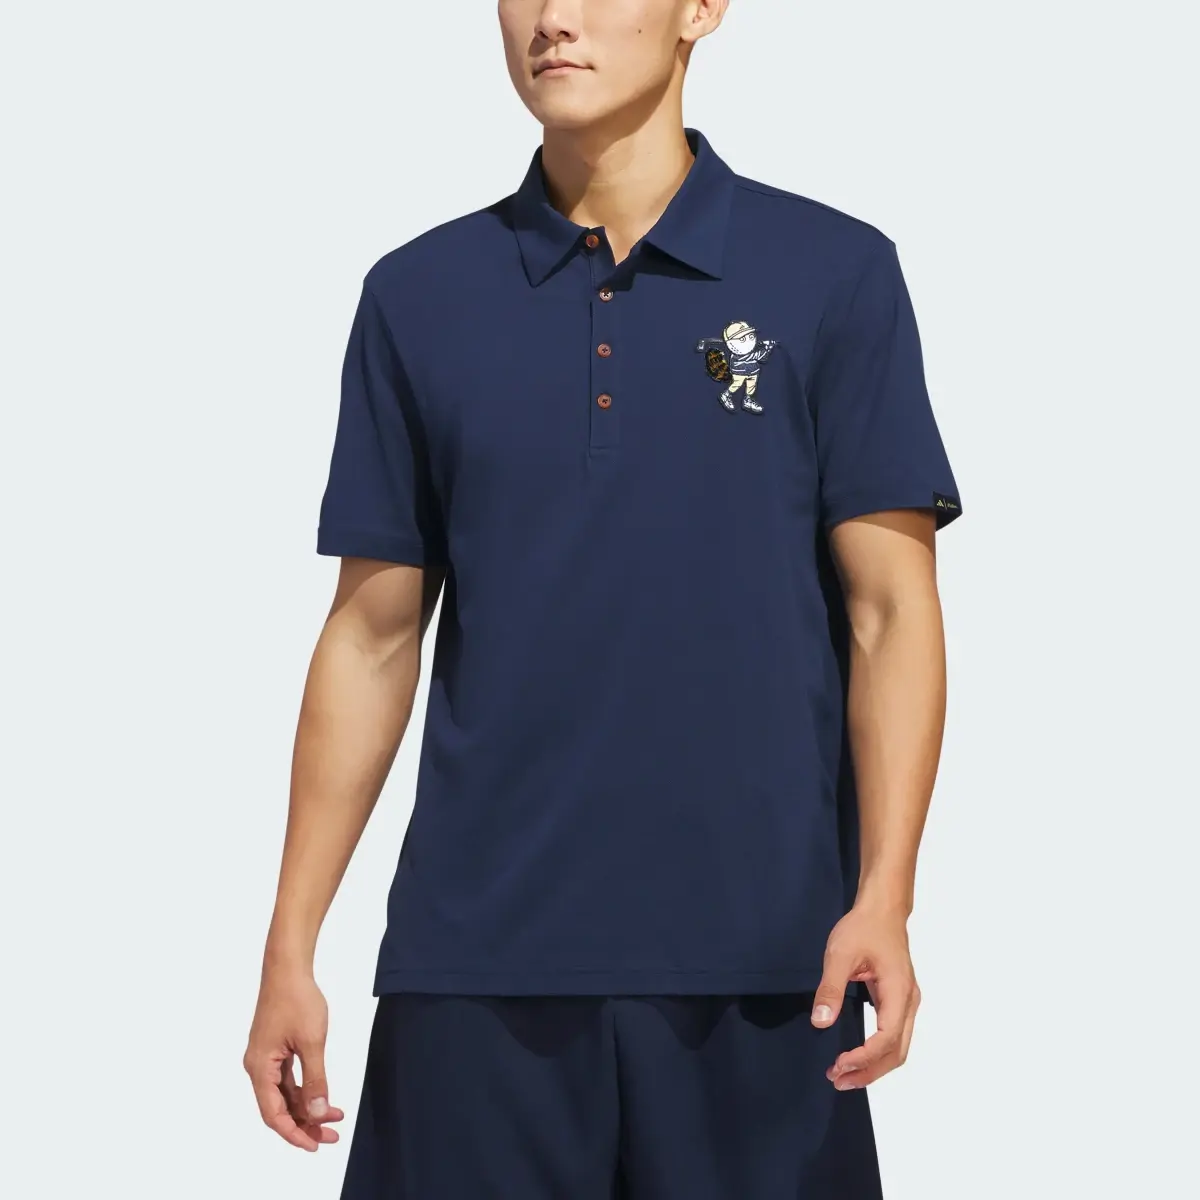 Adidas Koszulka Malbon Polo. 1